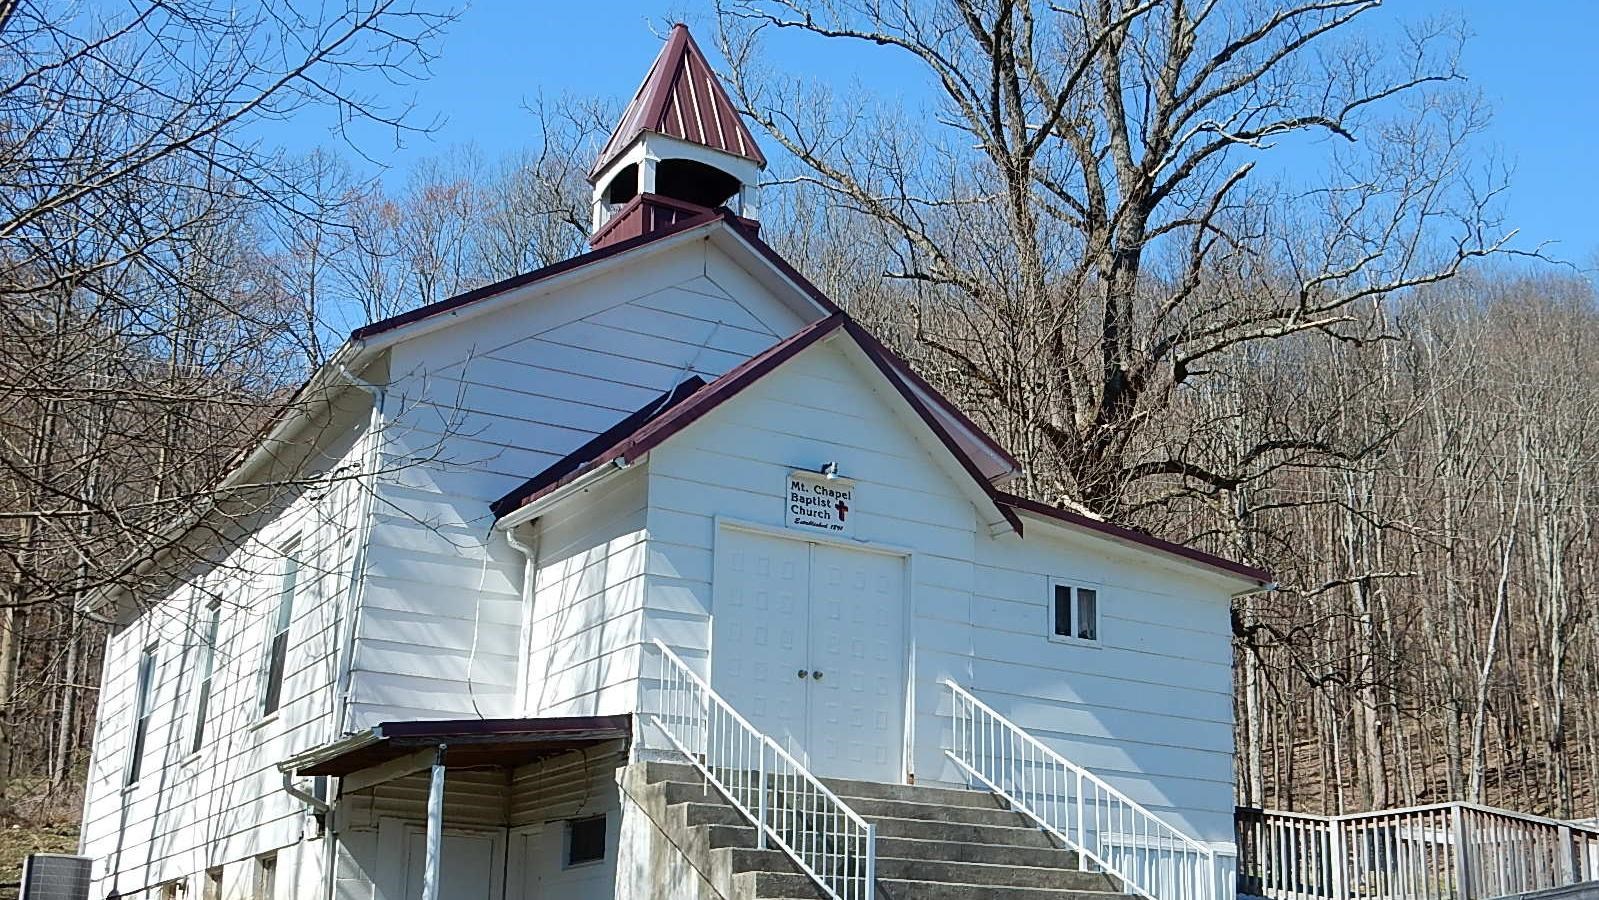 A white church with purple trim